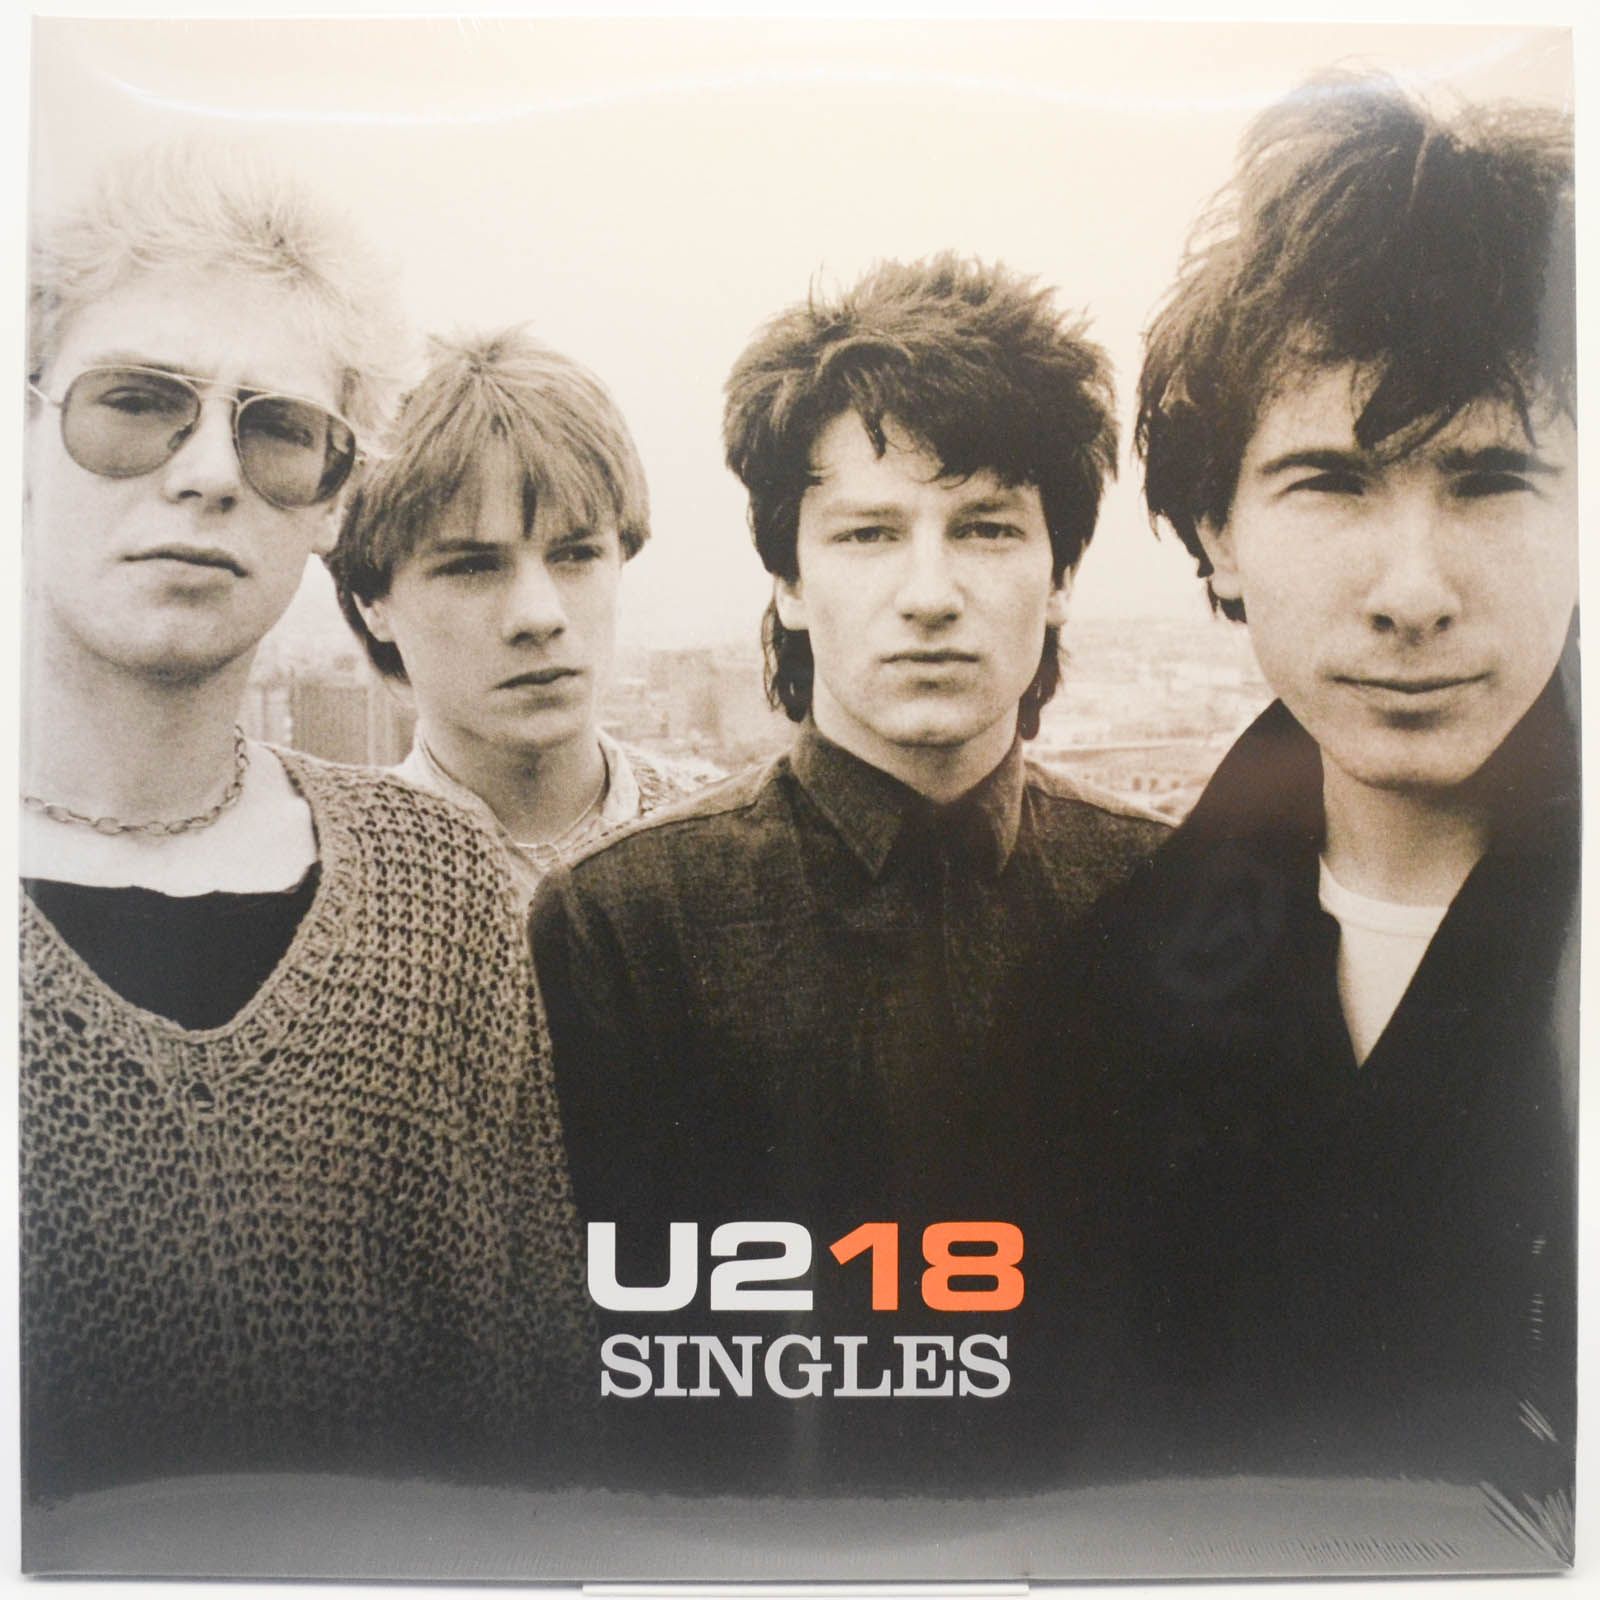 U2 — U218 Singles (2LP), 2006